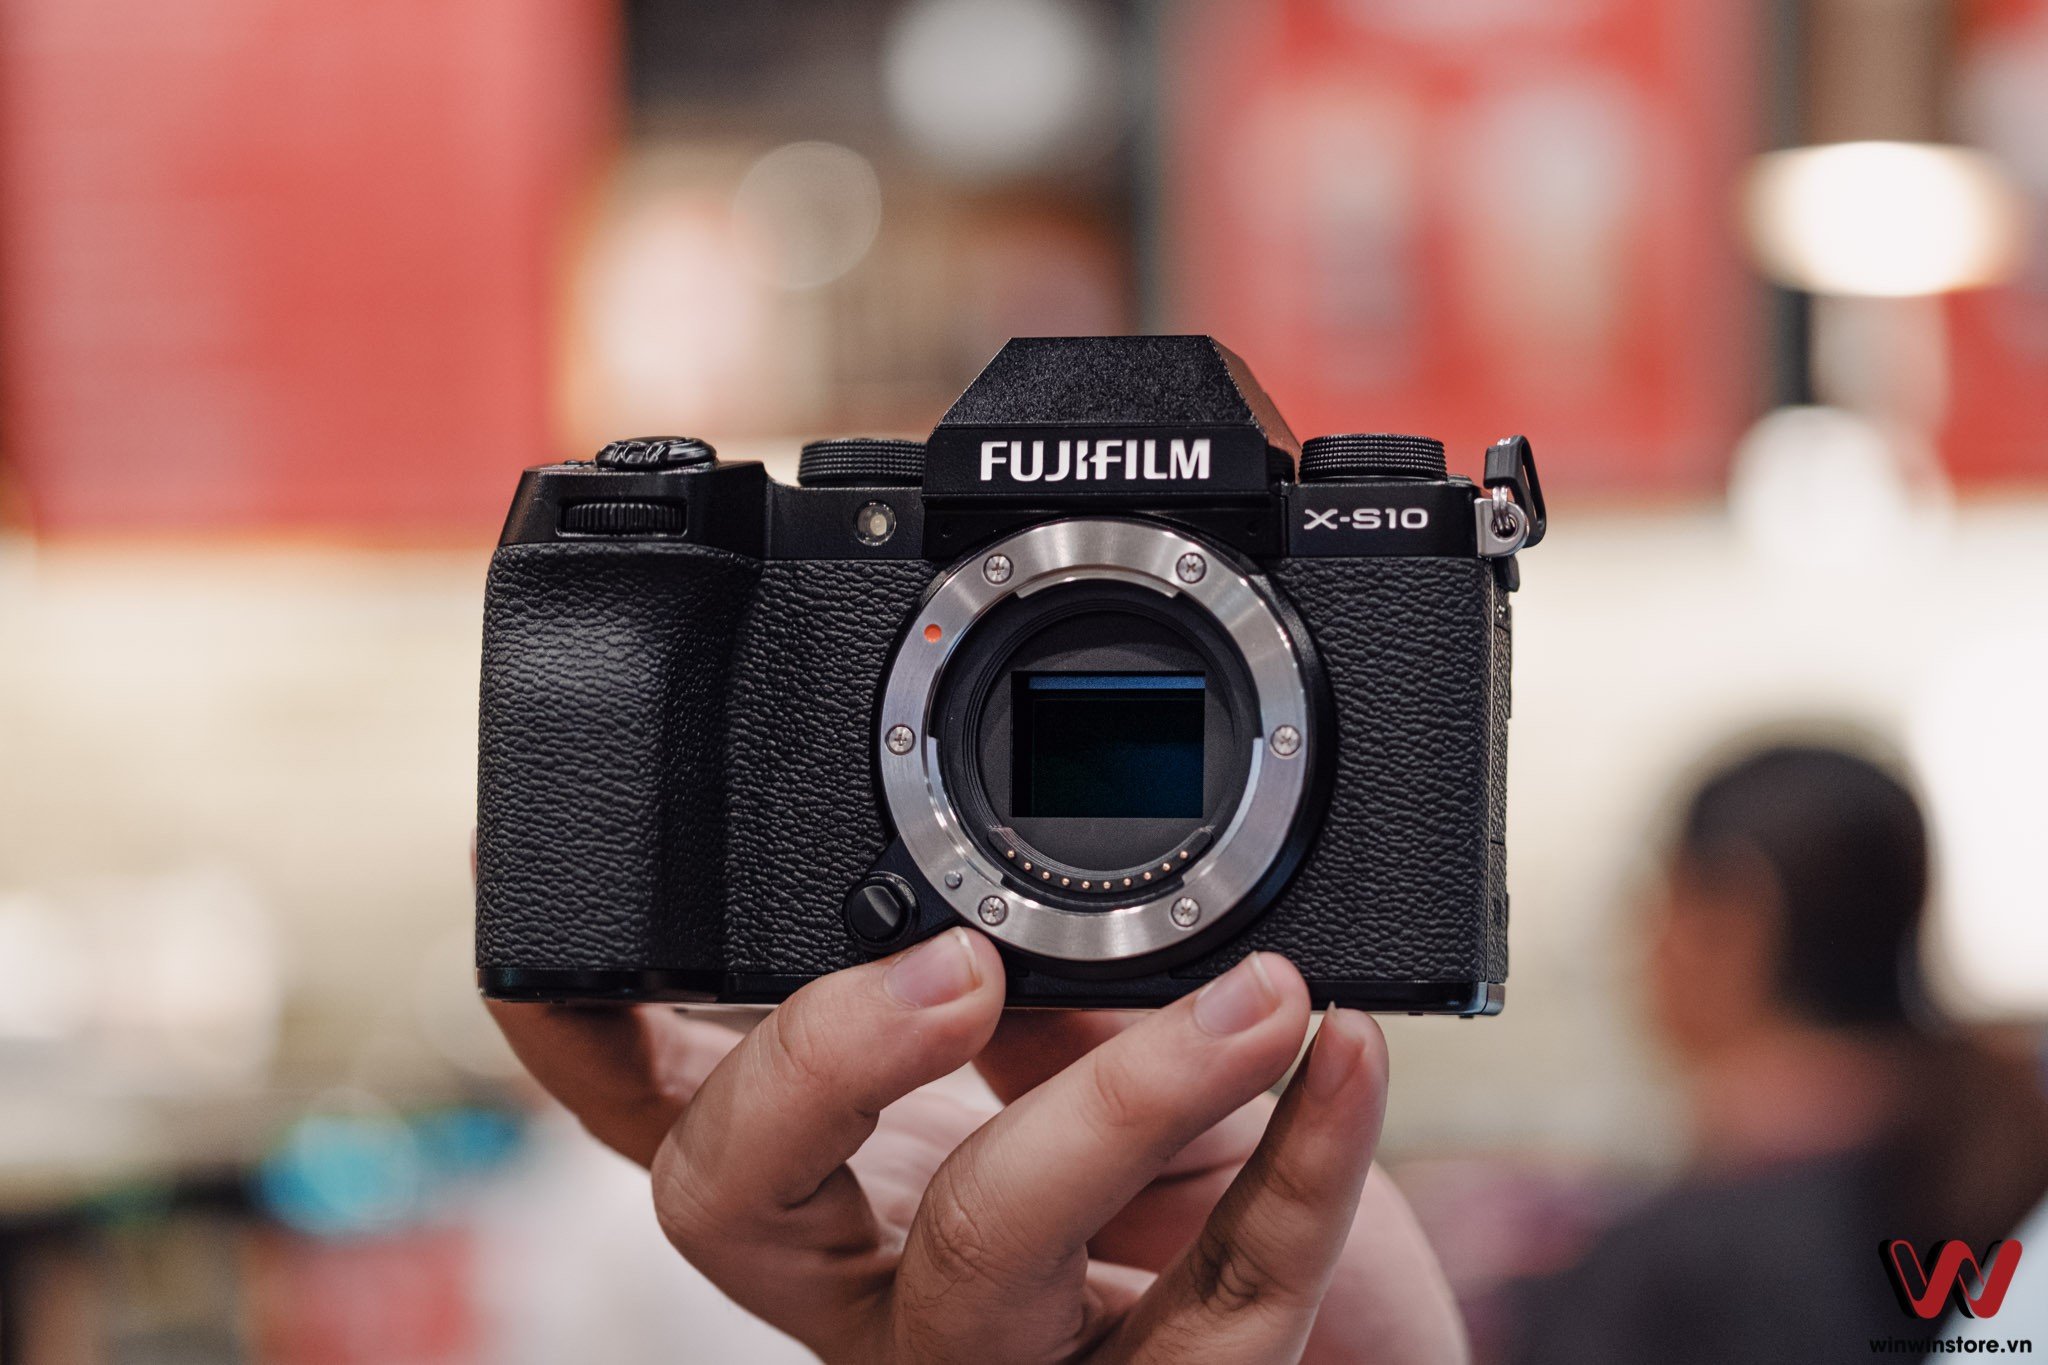 Mở hộp Fujifilm X-S10 chính hãng: Đây là những thứ bạn phải đánh đổi để có được hiệu năng X-T4 trong mức giá X-T30